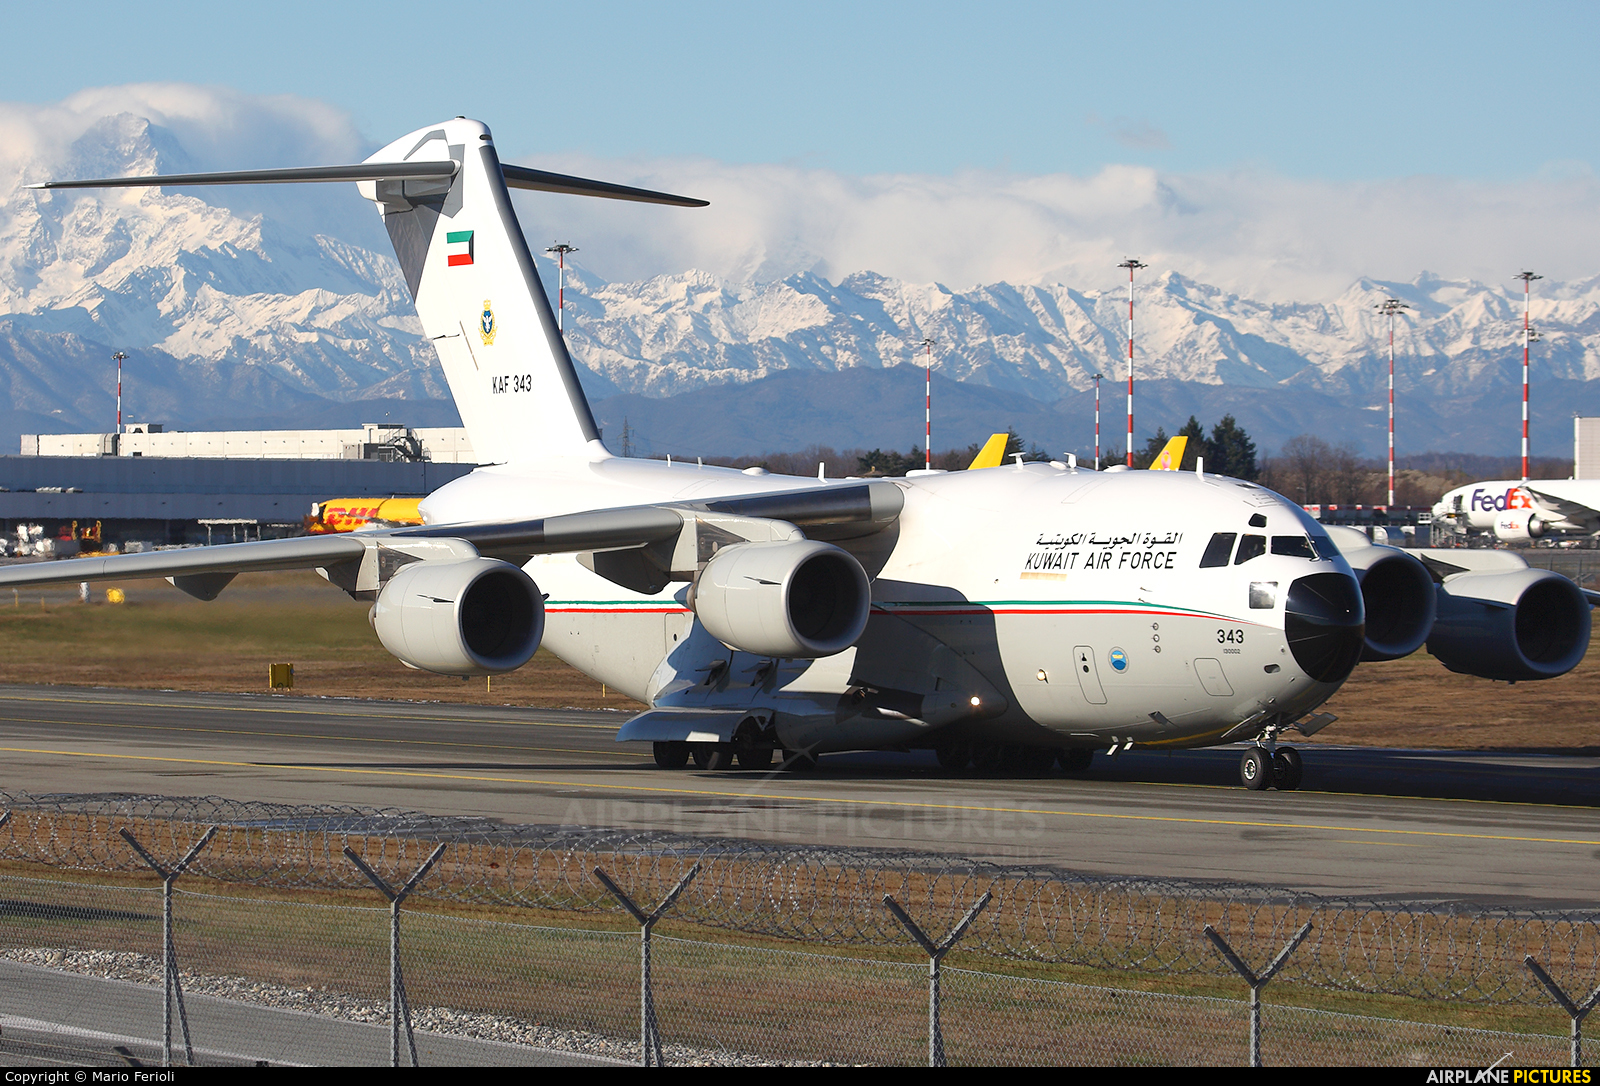 Kuwait - Air Force KAF343 aircraft at Milan - Malpensa